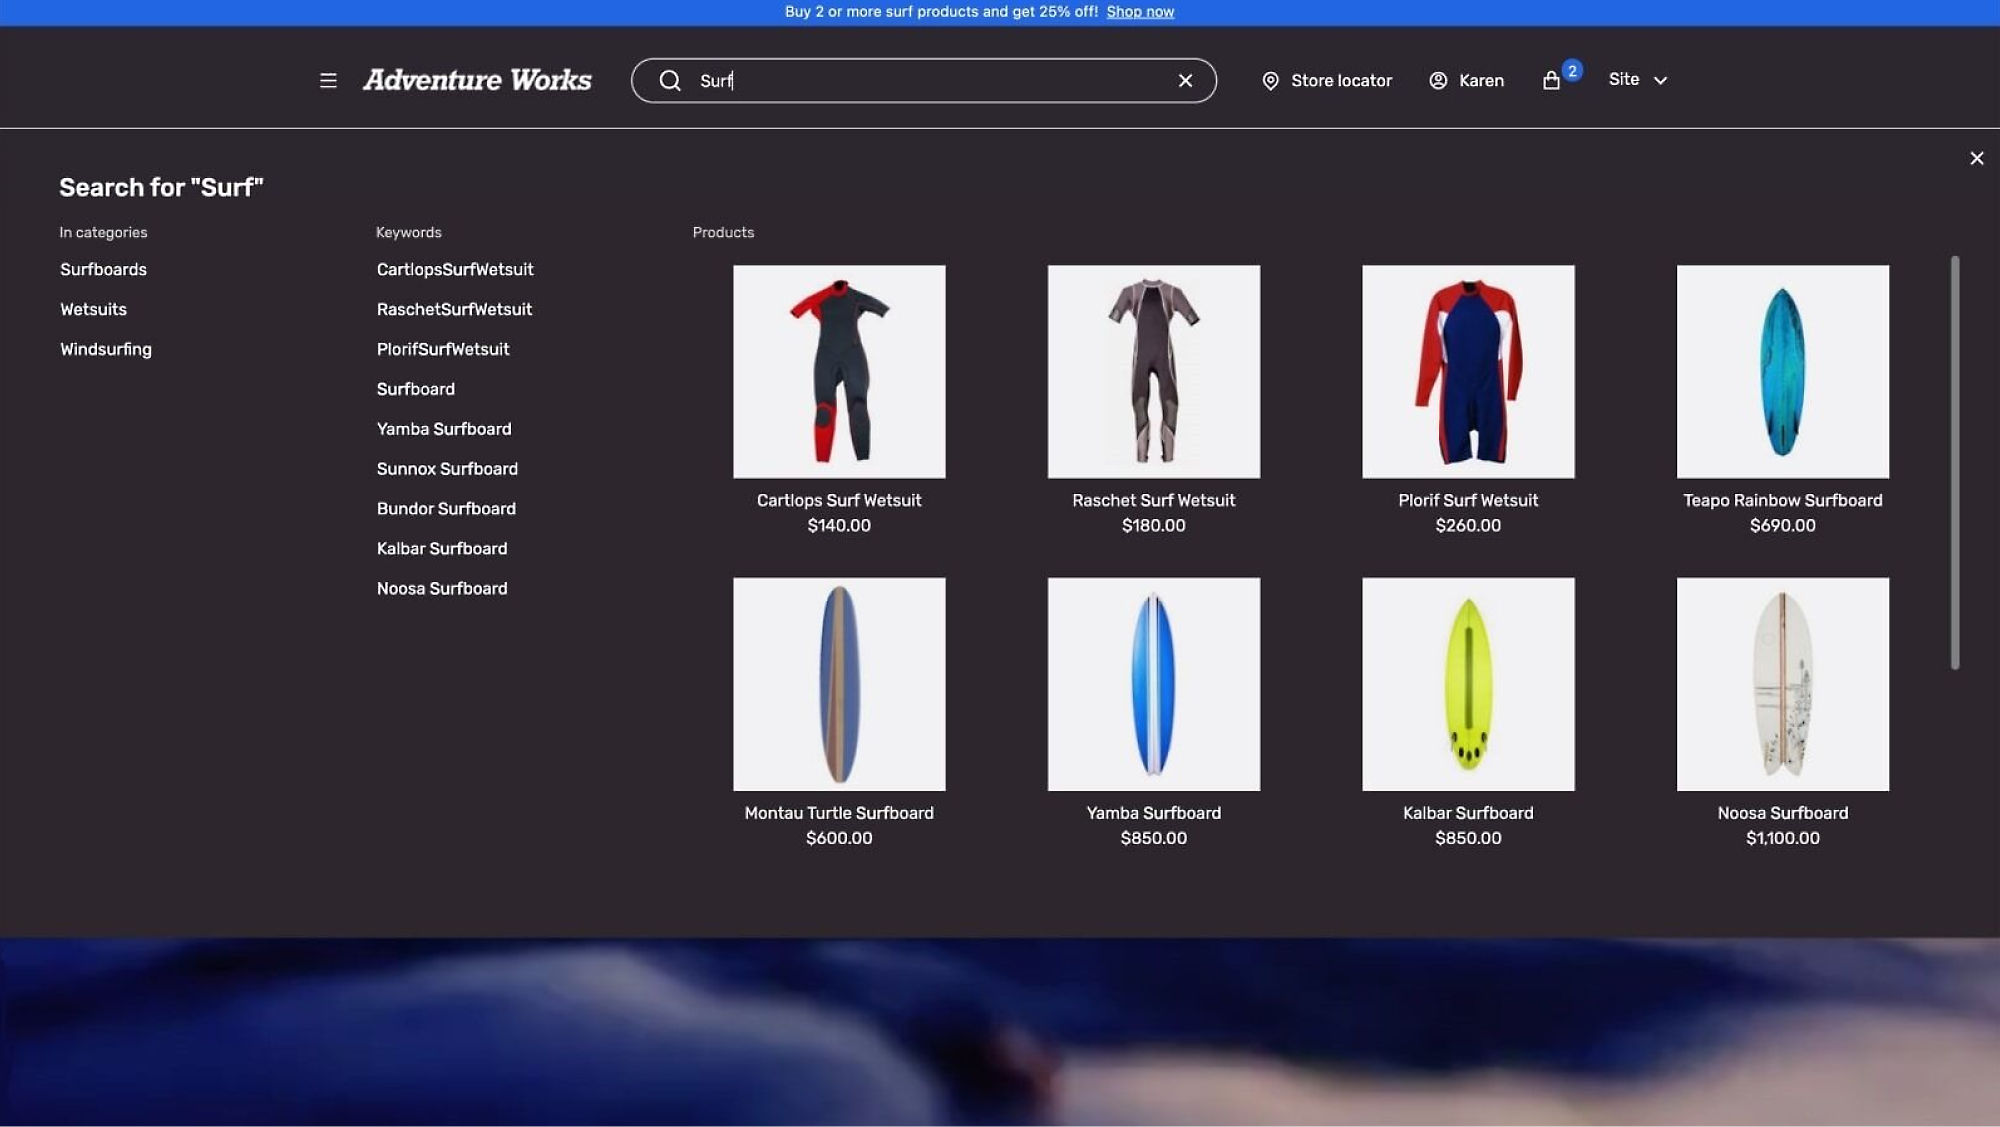 Promoción: Compra más de 2 productos de surf y obtén un 25 % de descuento. Los productos incluyen tablas de surf y trajes de neopreno. Precios enumerados.